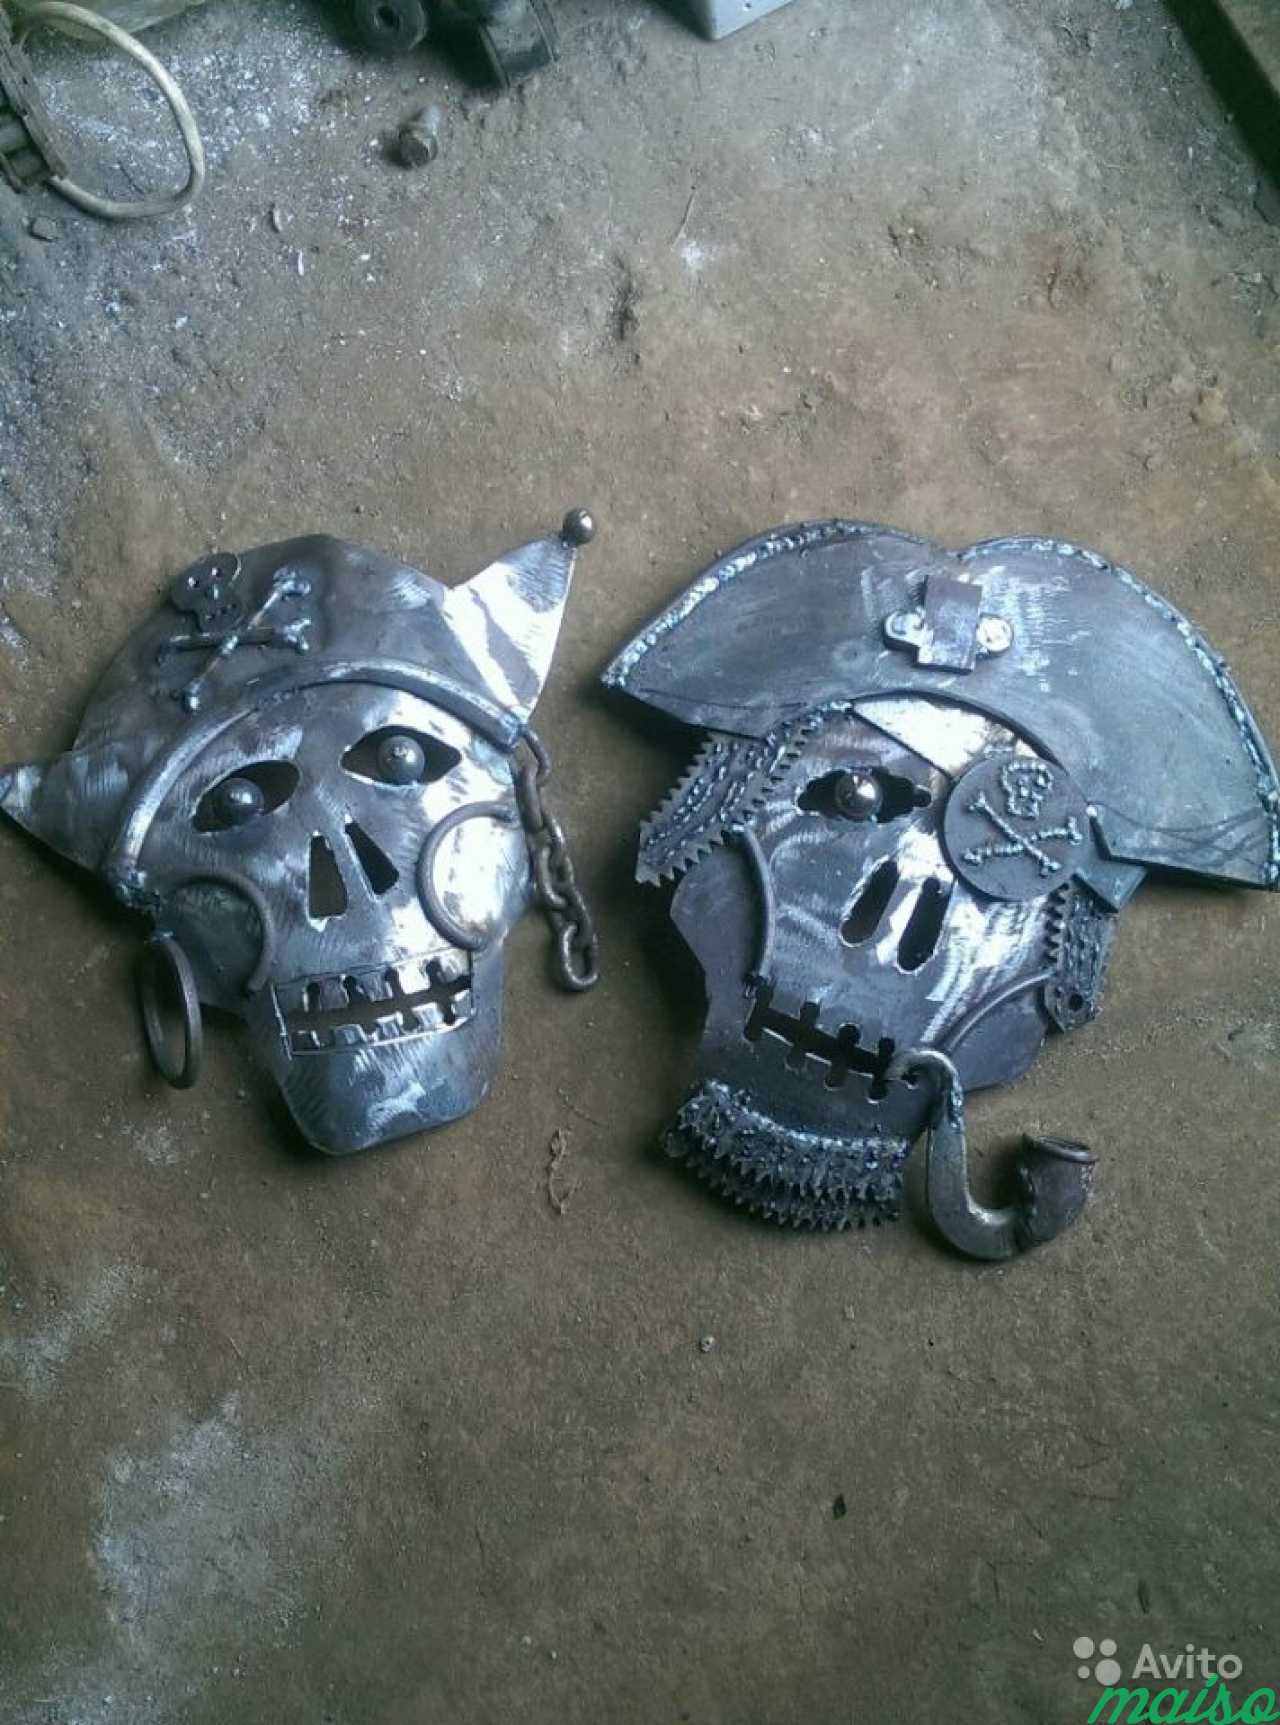 Пираты фигуры из металла